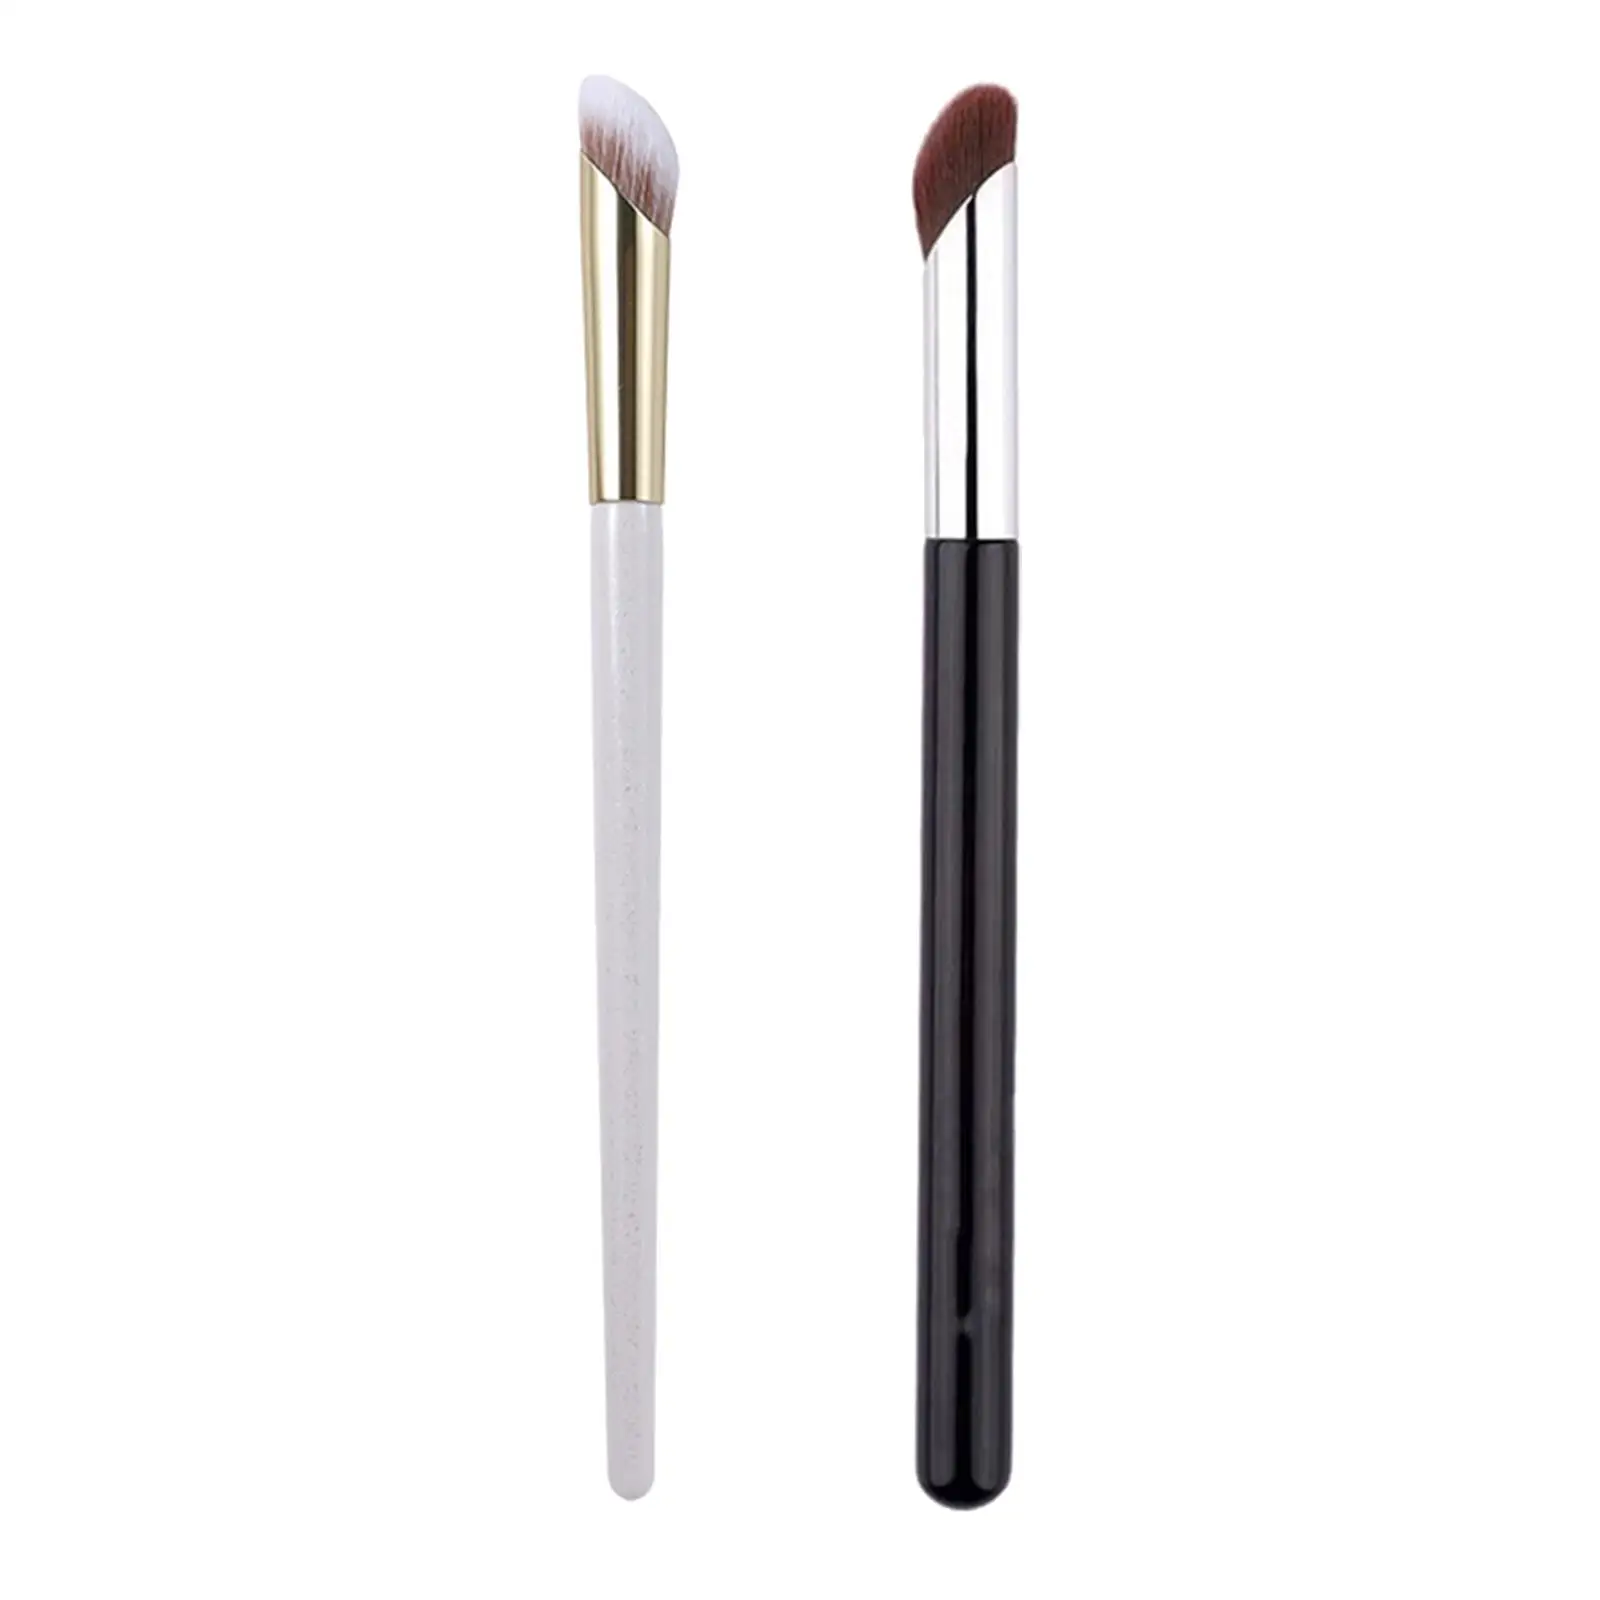 Concealer Makeup Brush for Blending with Powder Powder Concealer Palette